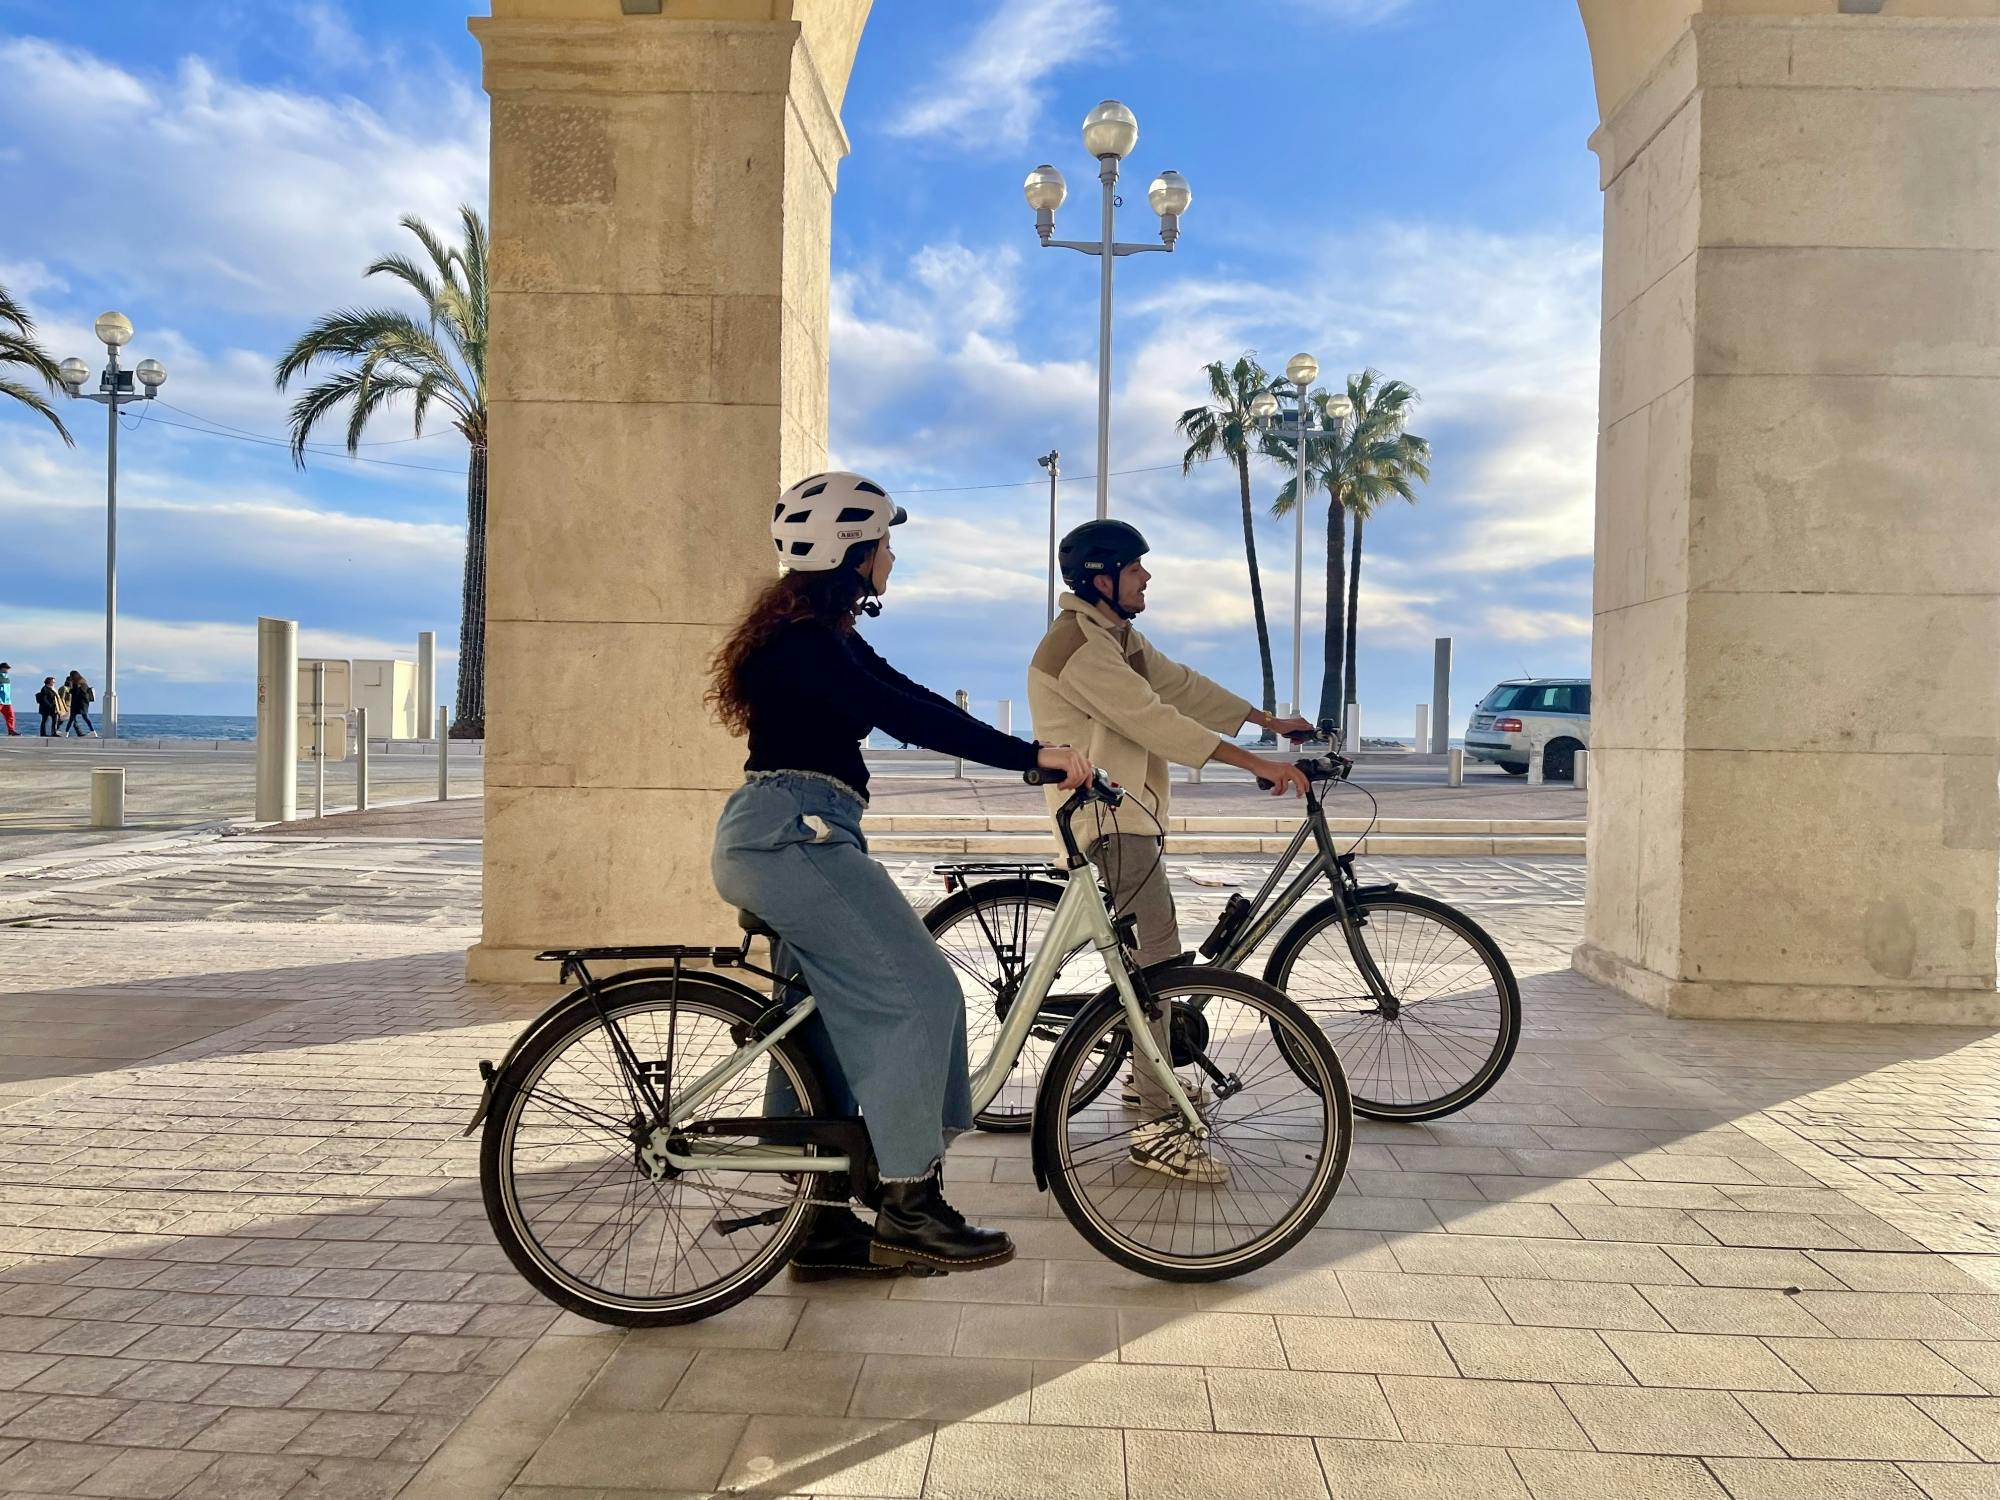 Noleggio bici da città a Nizza